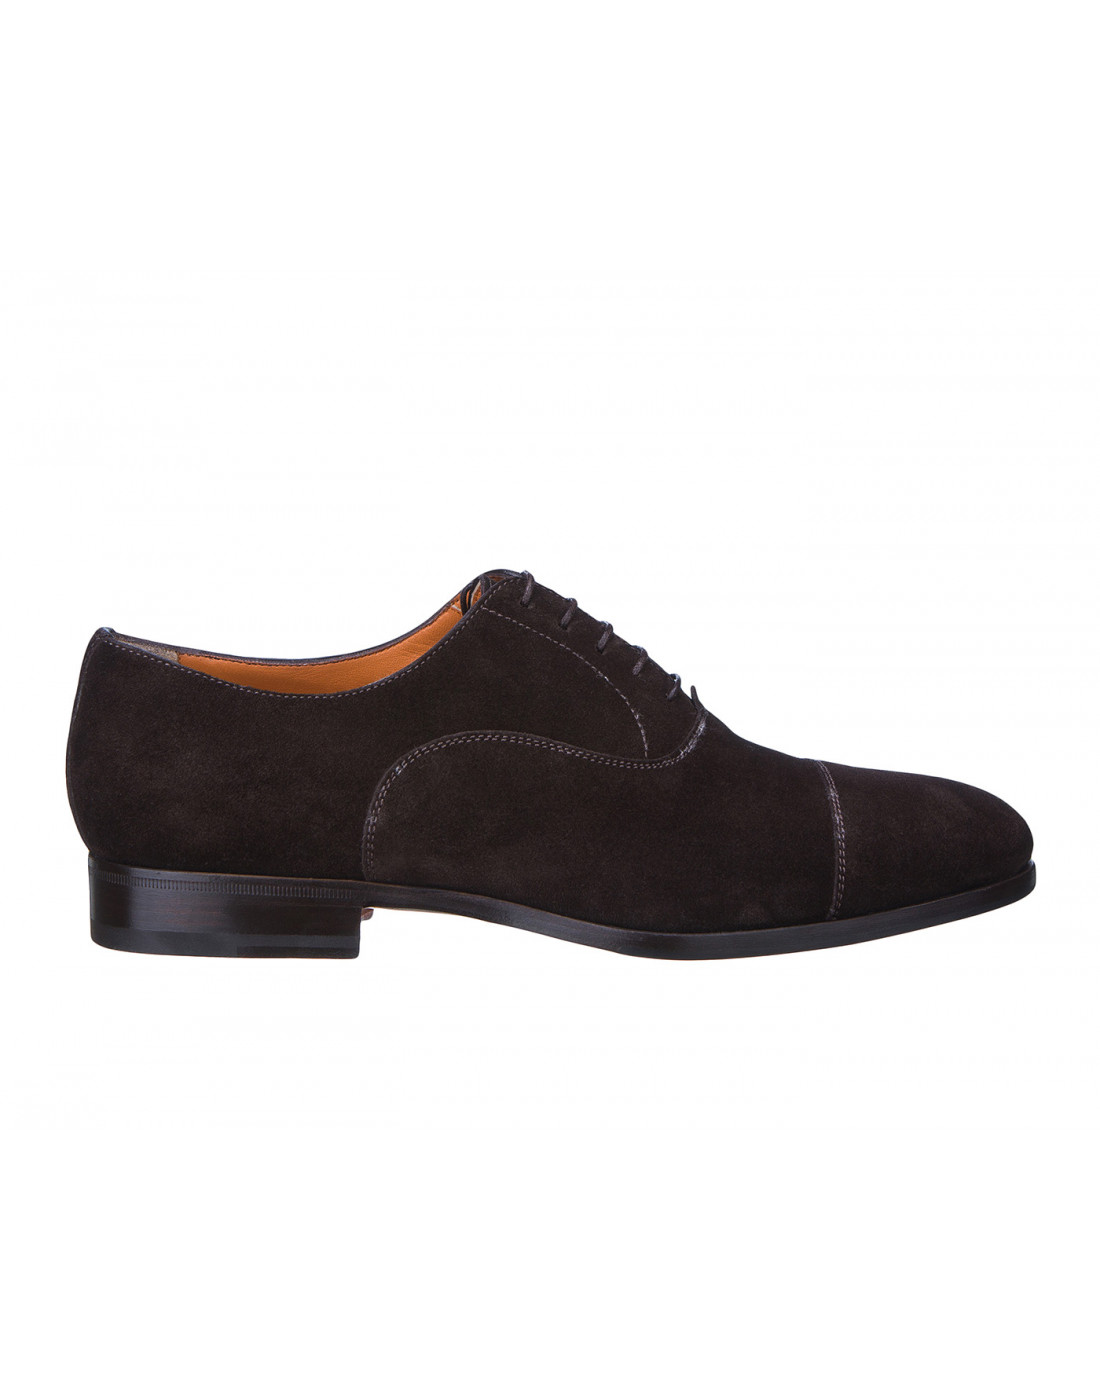 Туфли коричневые мужские Santoni S14285 - 50-1